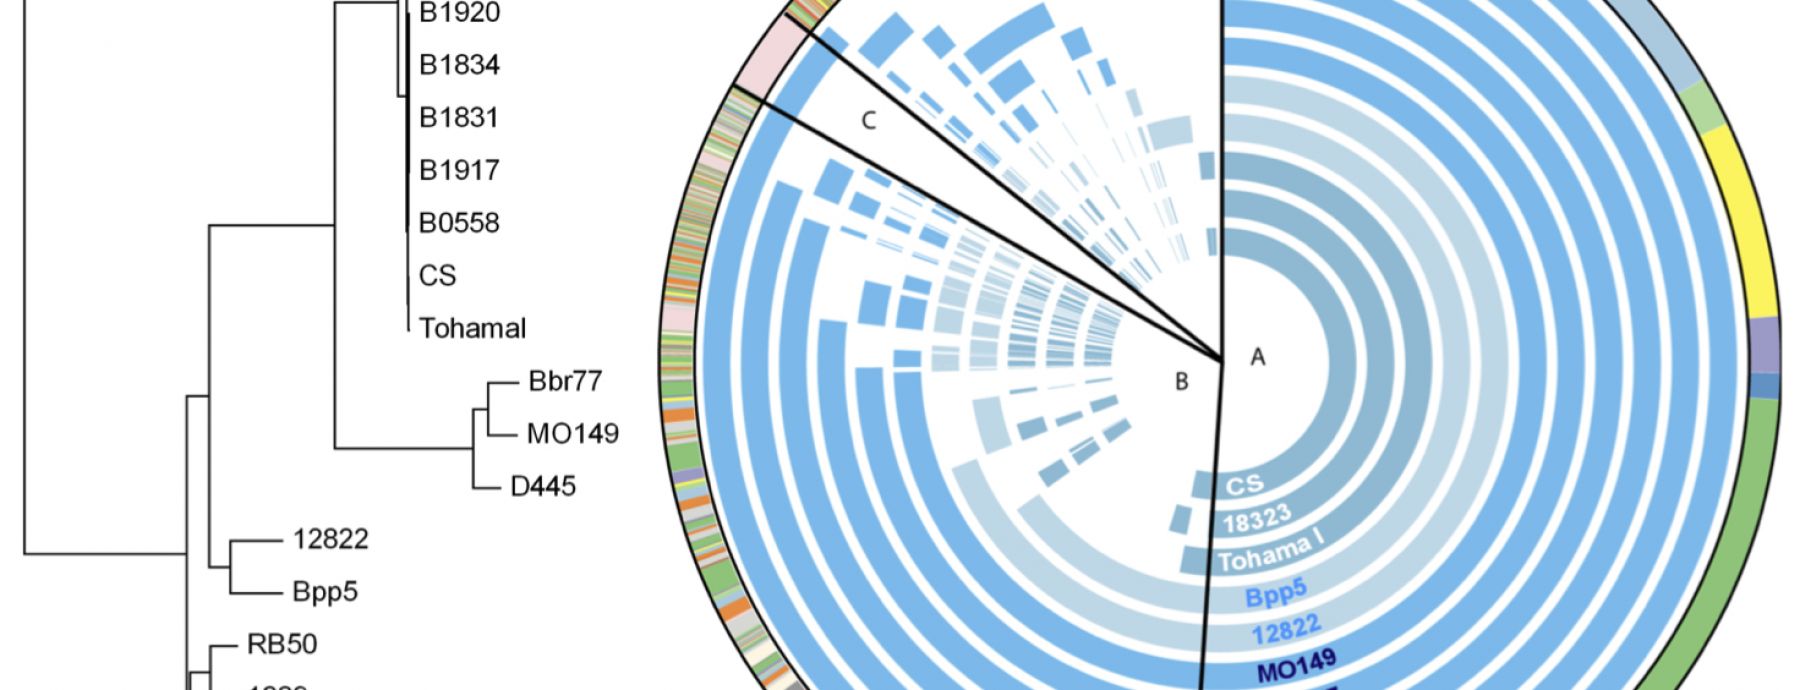 Comparative genomics of the classical Bordetella subspecies